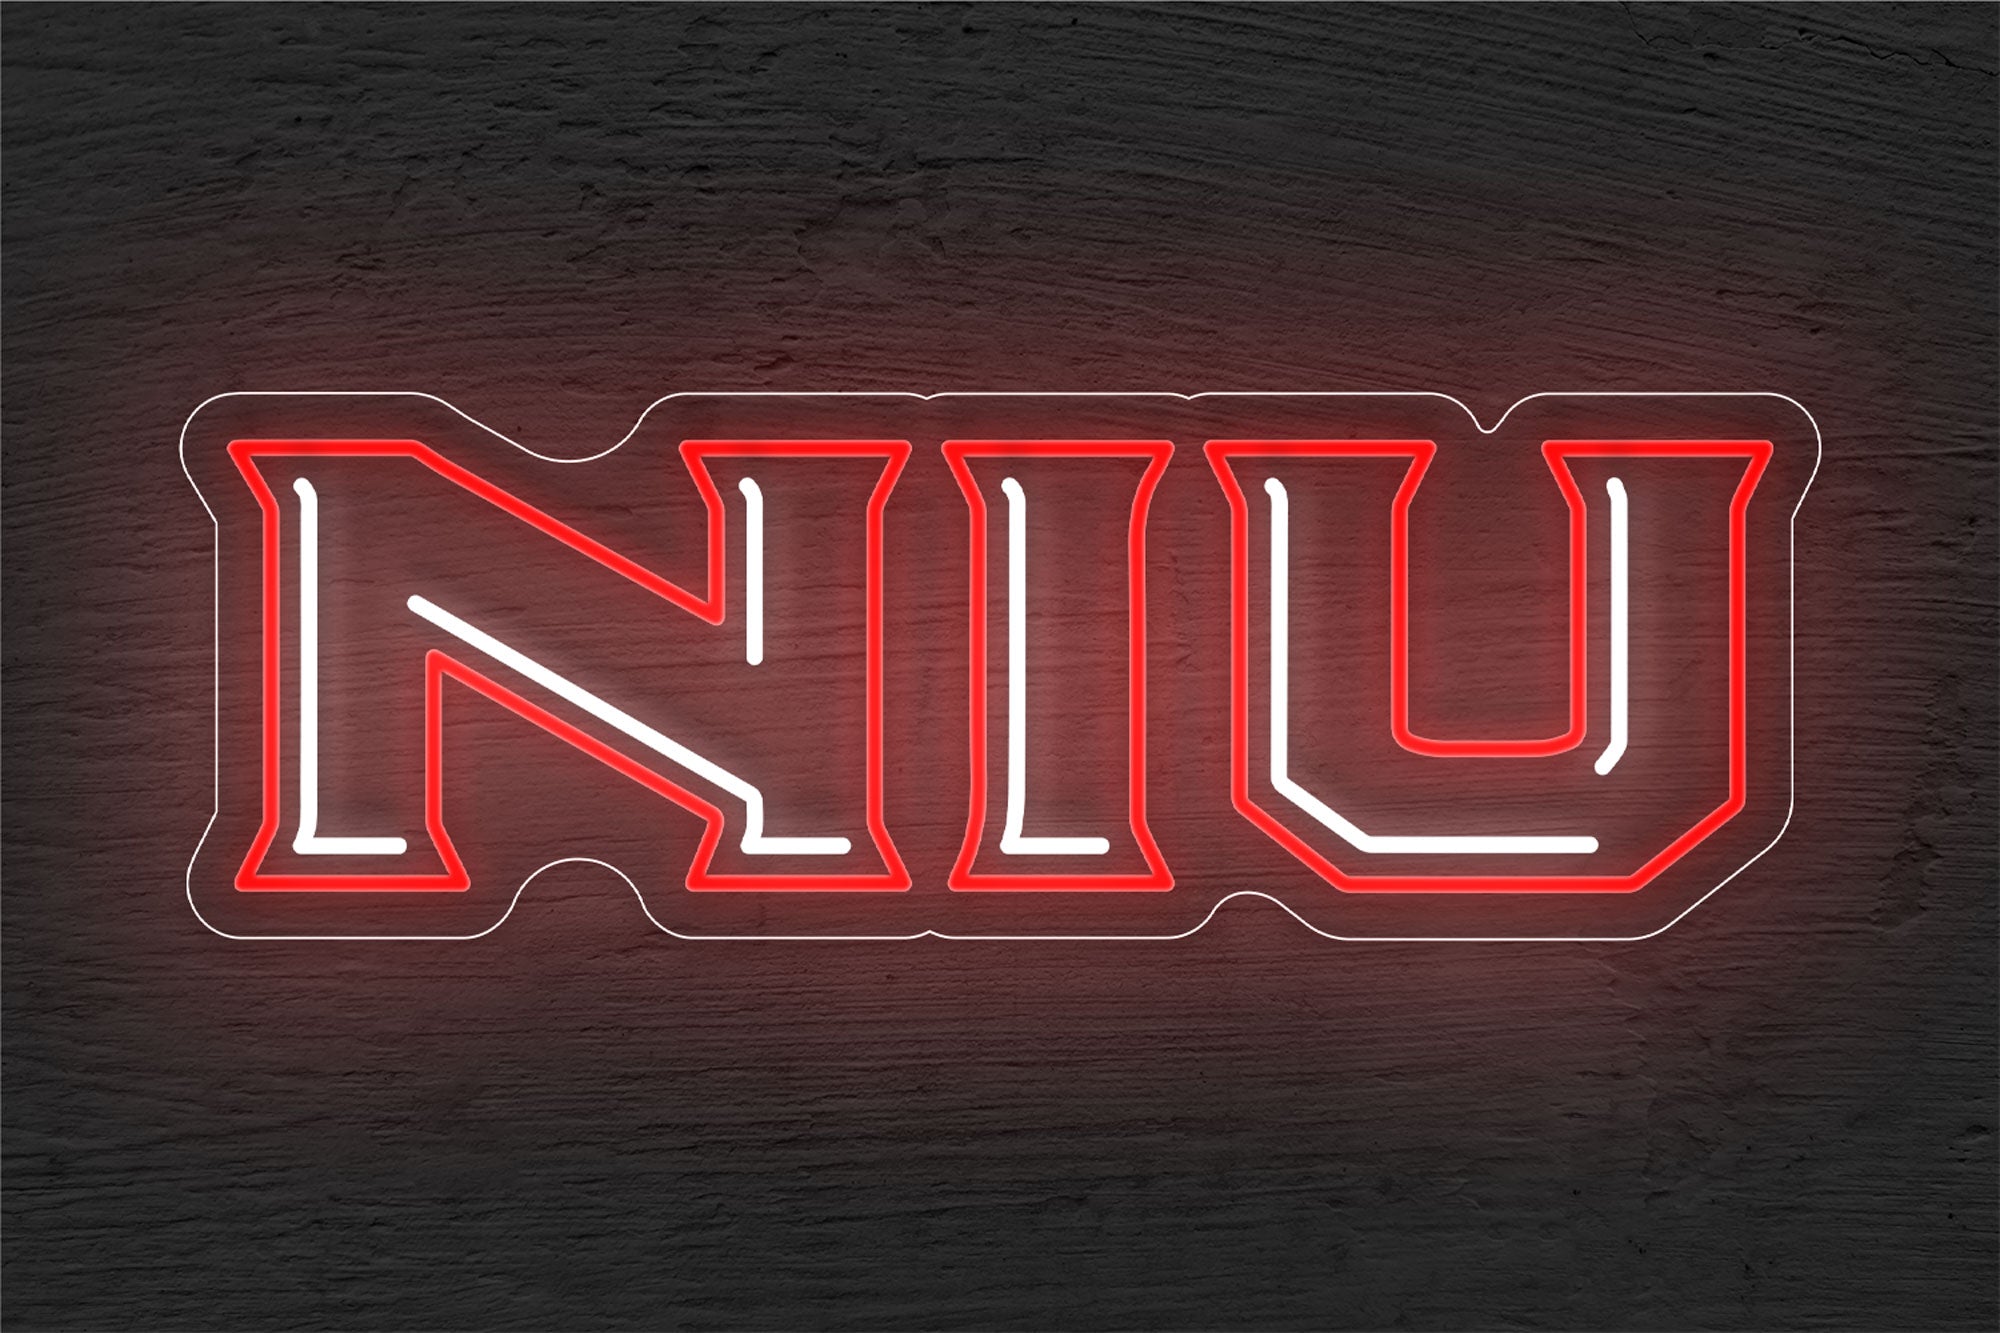 Northern Illinois Huskies Men's Basketball LED Neon Sign